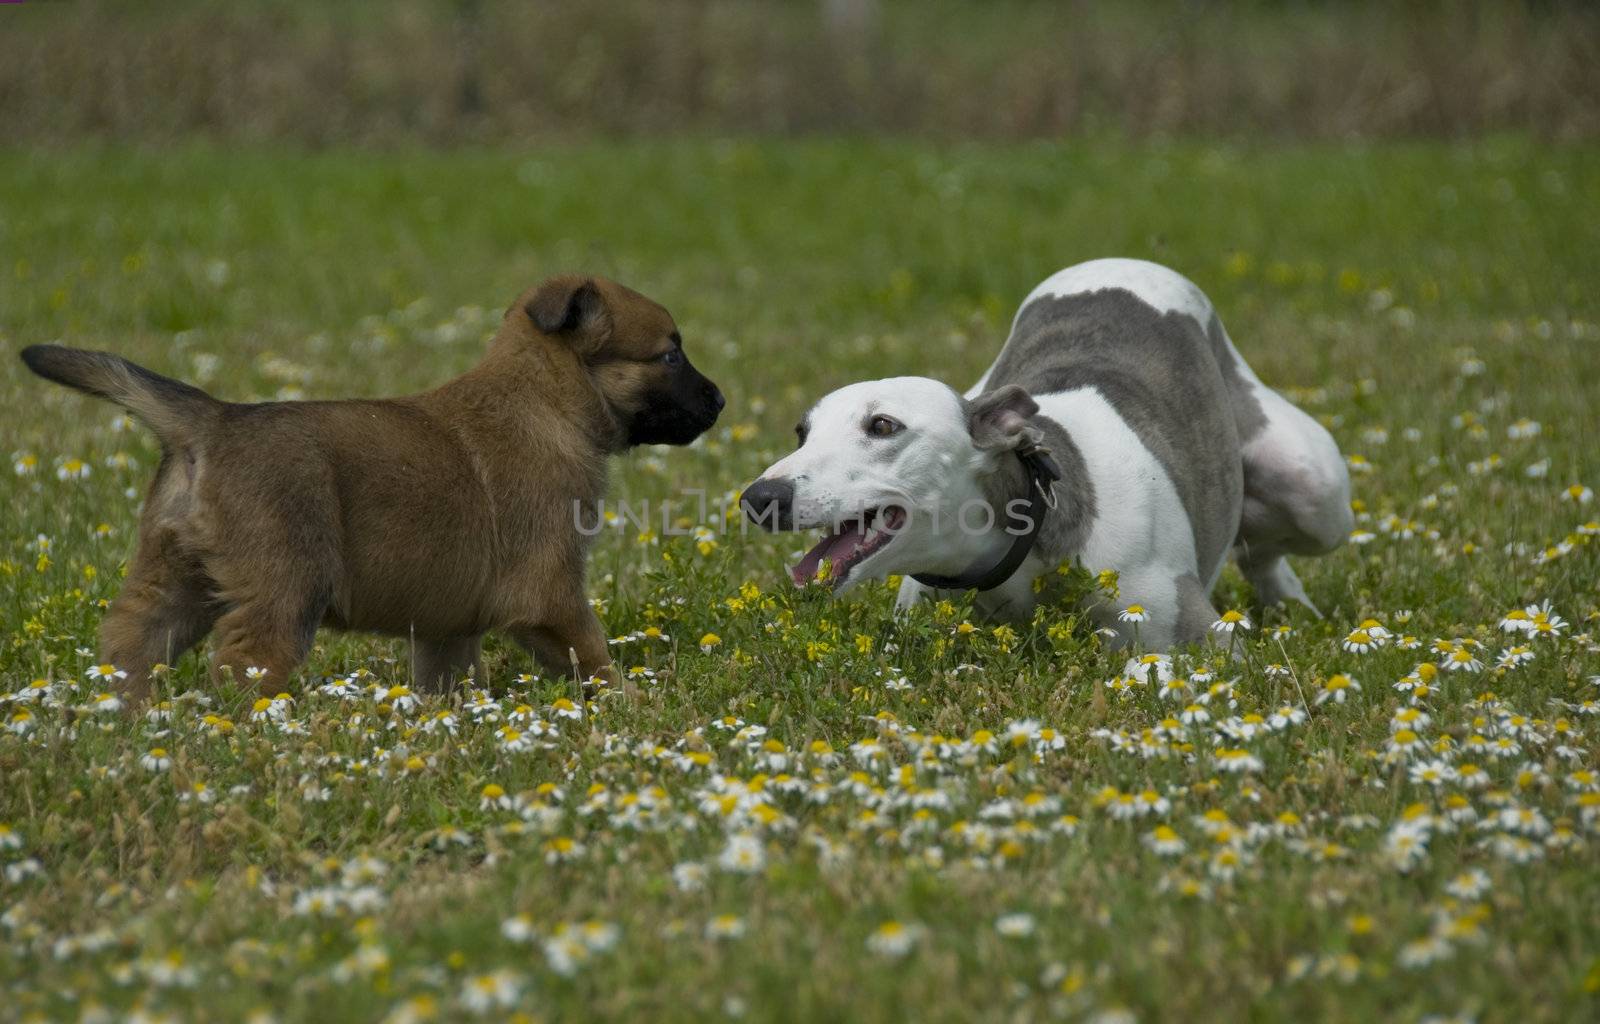 greyhound and puppy sheepdog by cynoclub